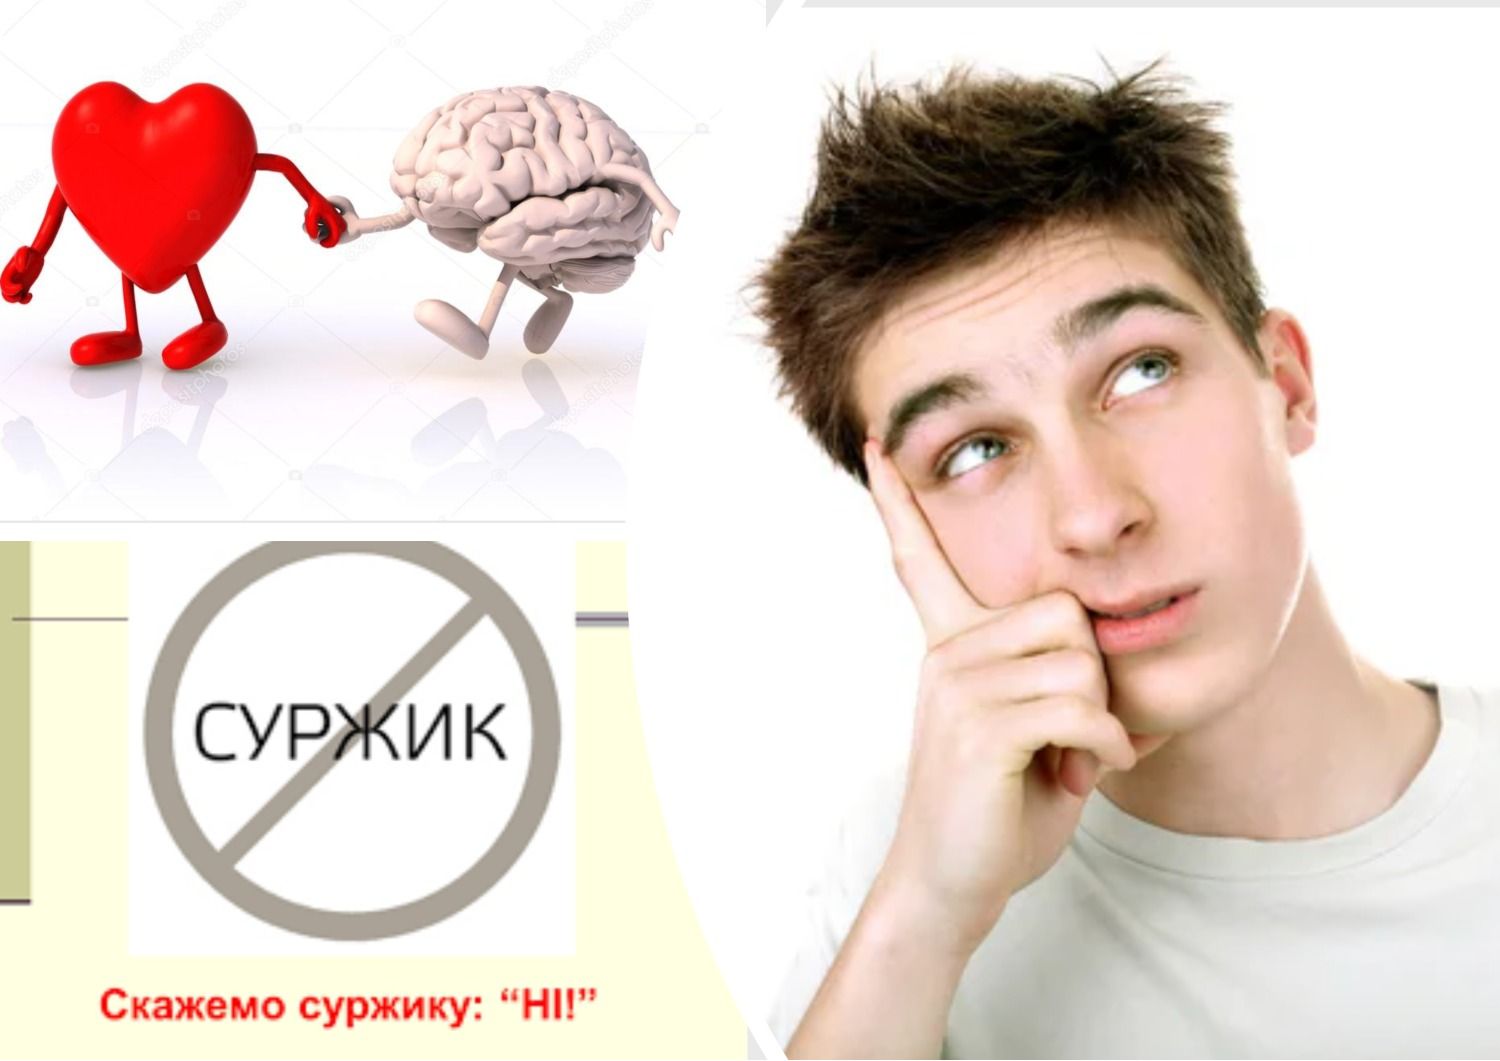 Антисуржик - как правильно называть украинским органы человека - 24 Канал - Образование